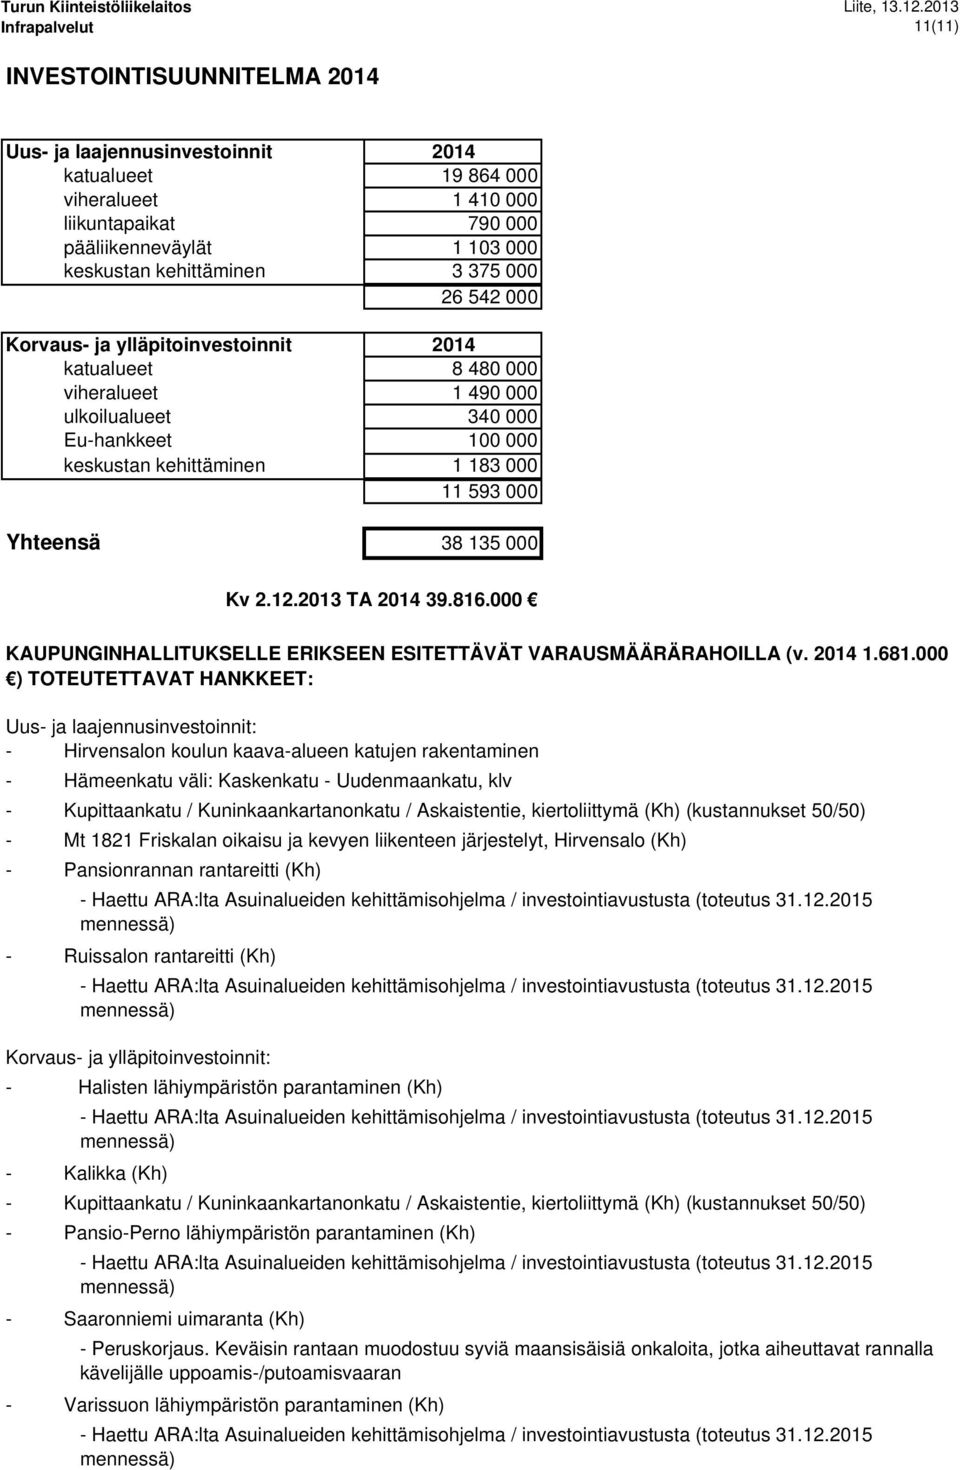 2013 TA 39.816.000 KAUPUNGINHALLITUKSELLE ERIKSEEN ESITETTÄVÄT VARAUSMÄÄRÄRAHOILLA (v. 1.681.